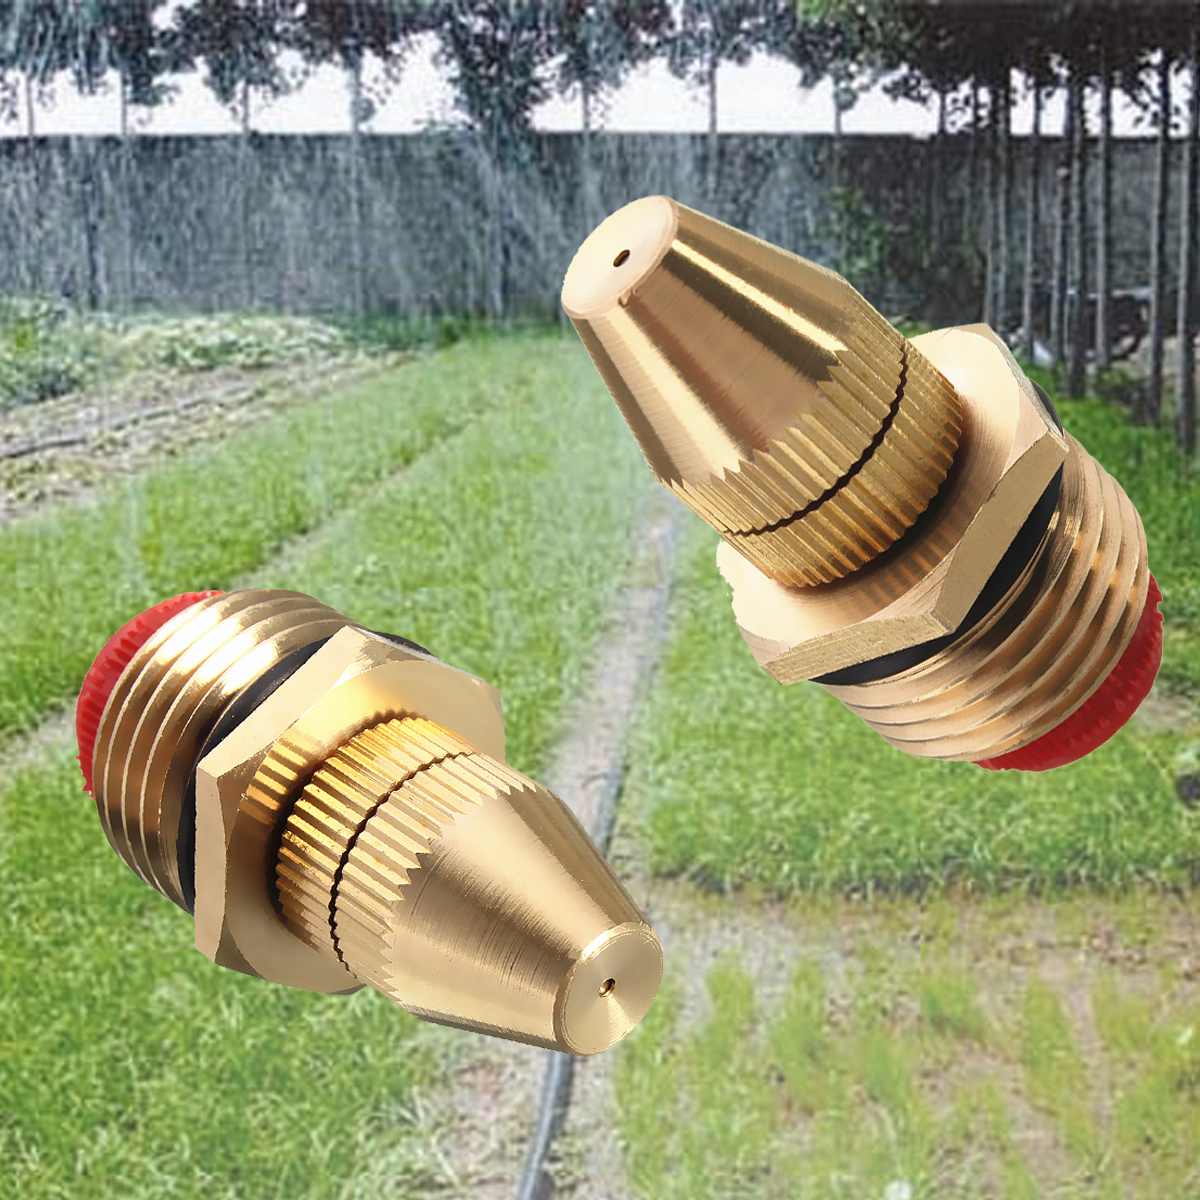 1/2 Inch Water Spray Nozzle Garden Sprinkler Accessories Adjustable Water Flows Brass Spray Misting Nozzles Garden Spray Head